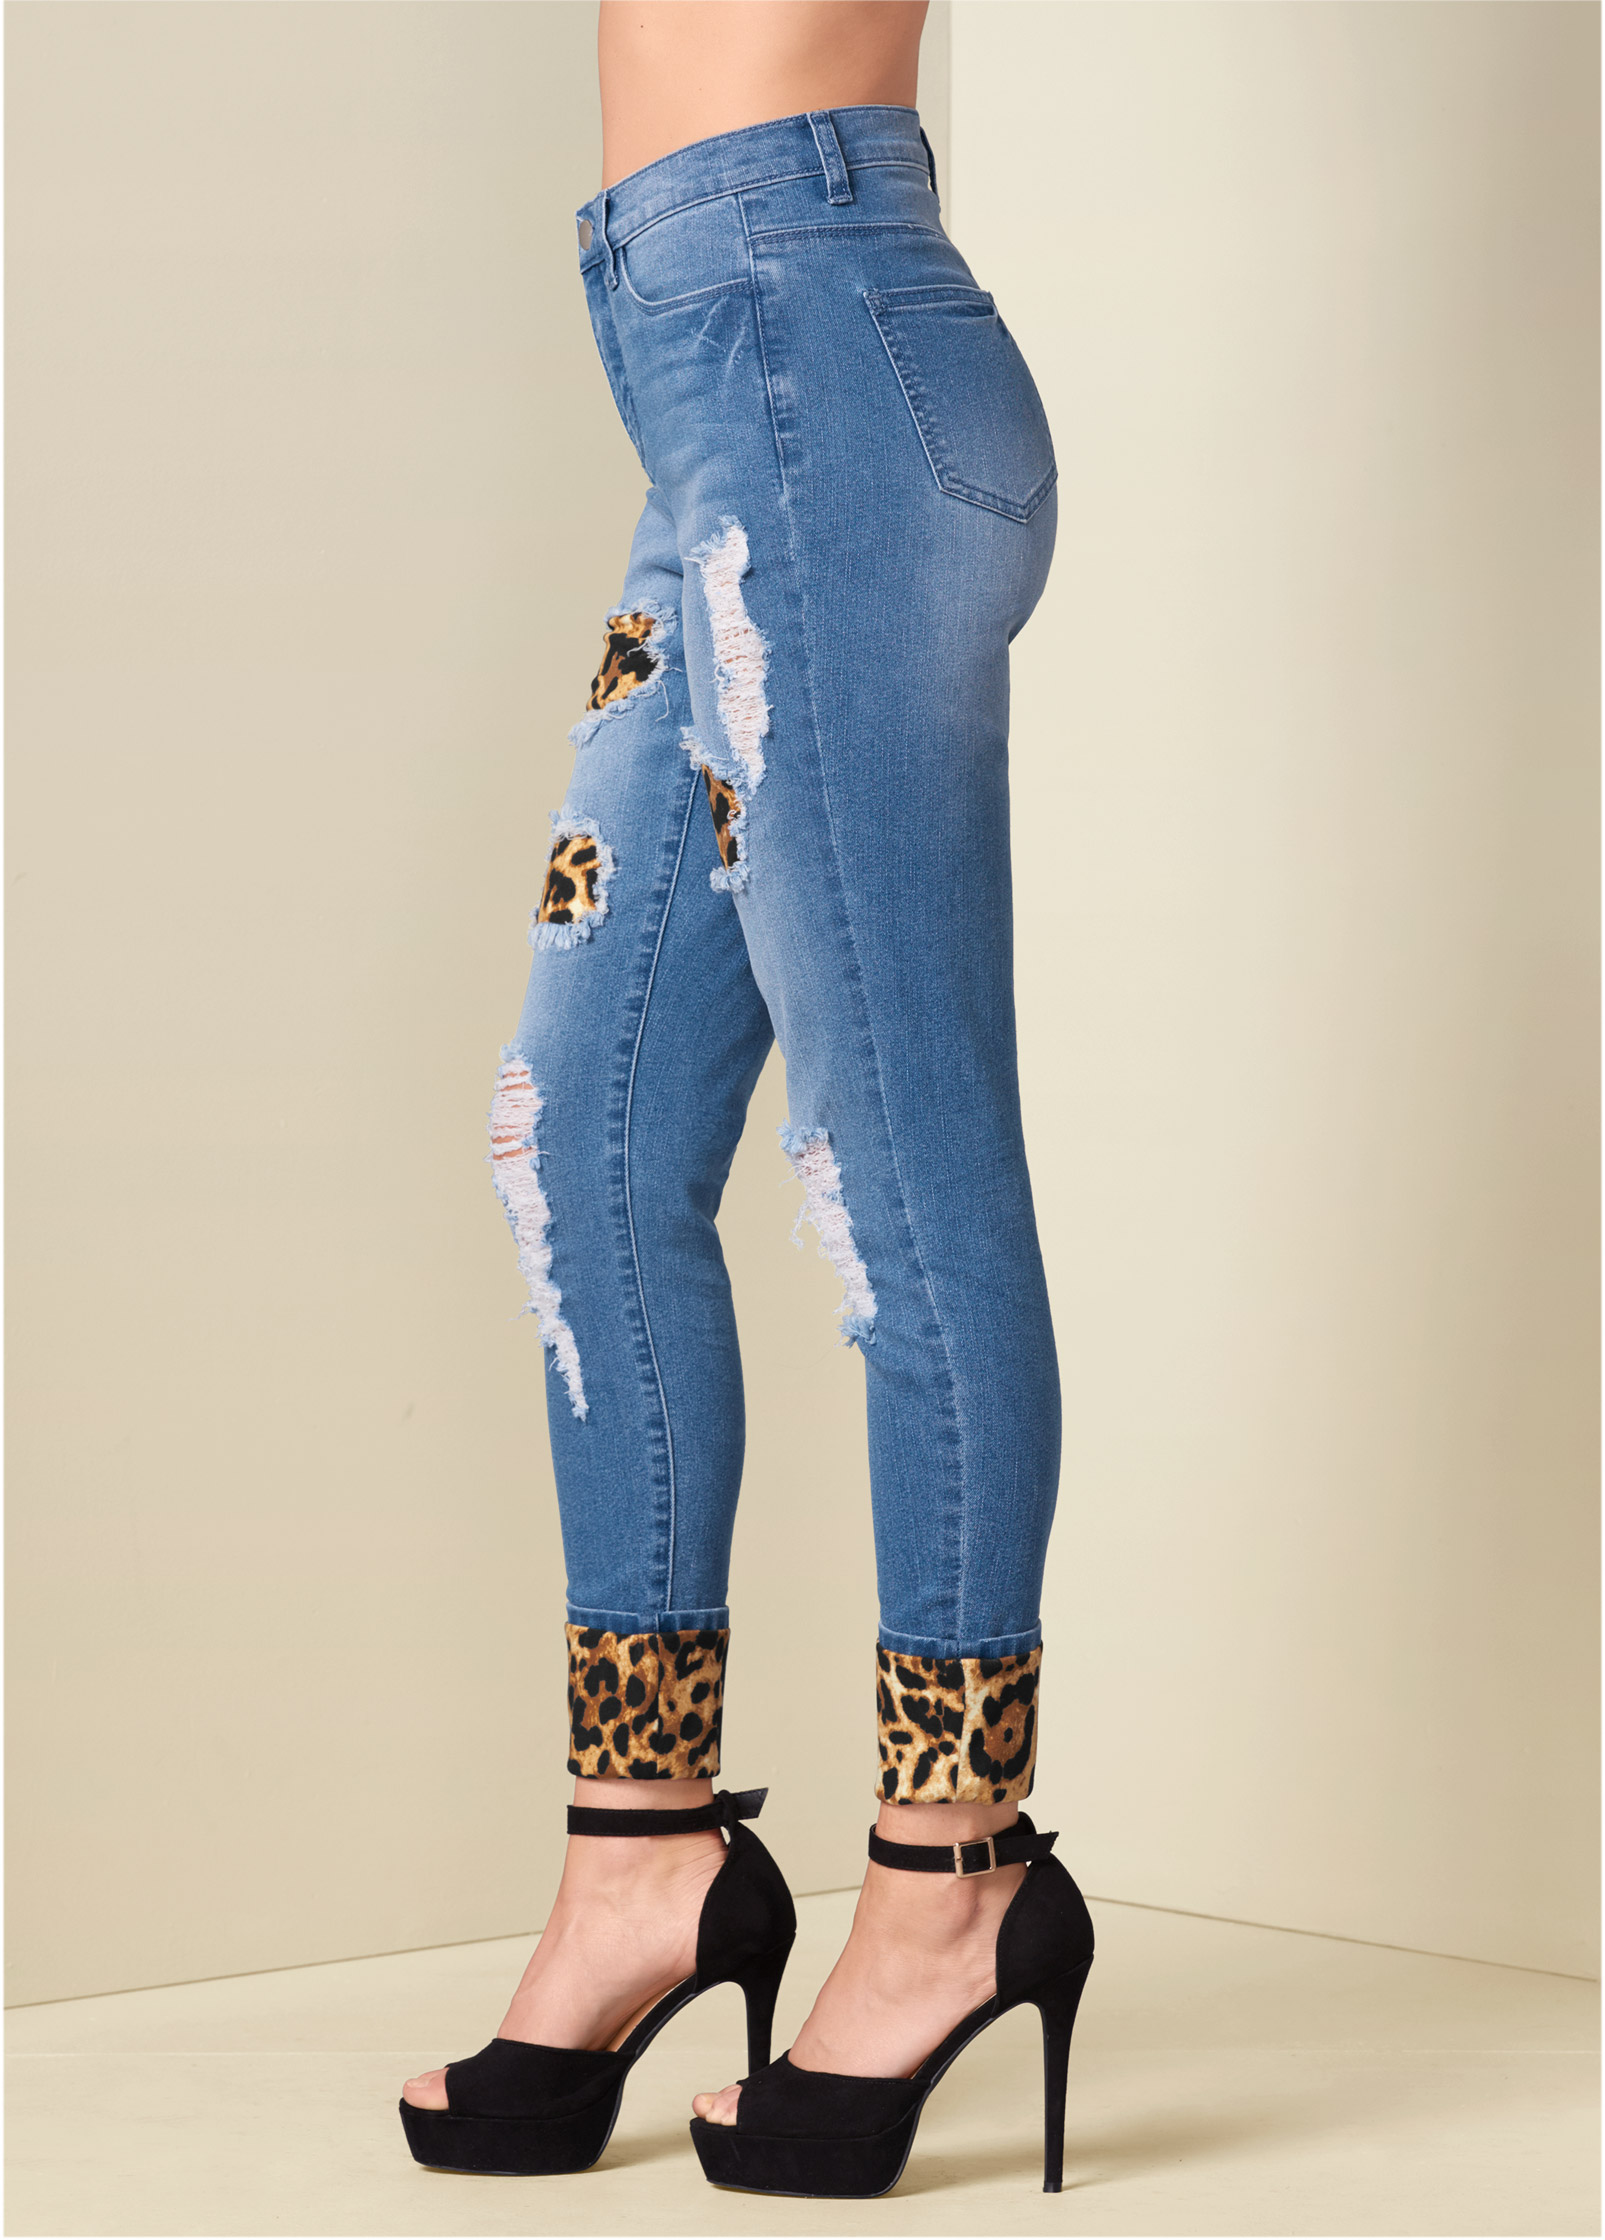 leopard cuff jeans